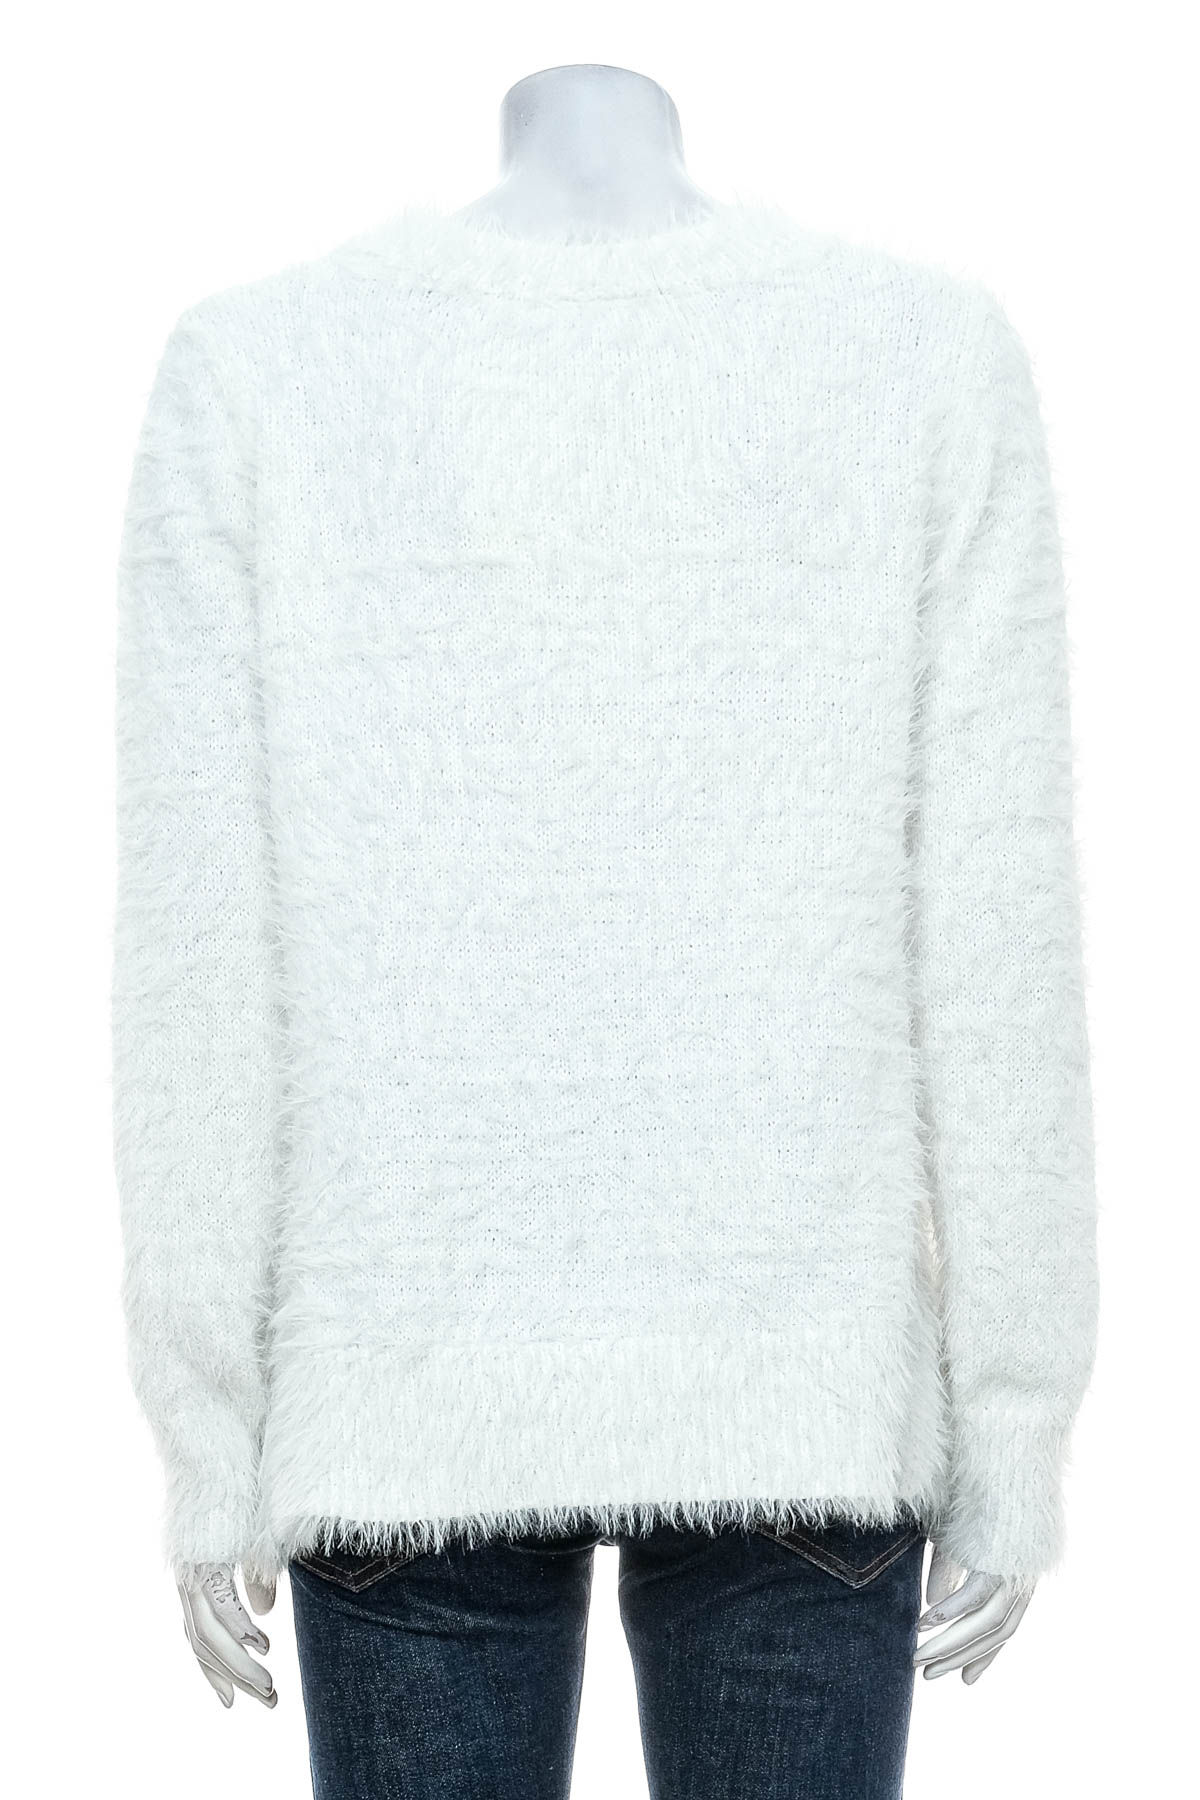 Women's sweater - G!na - 1